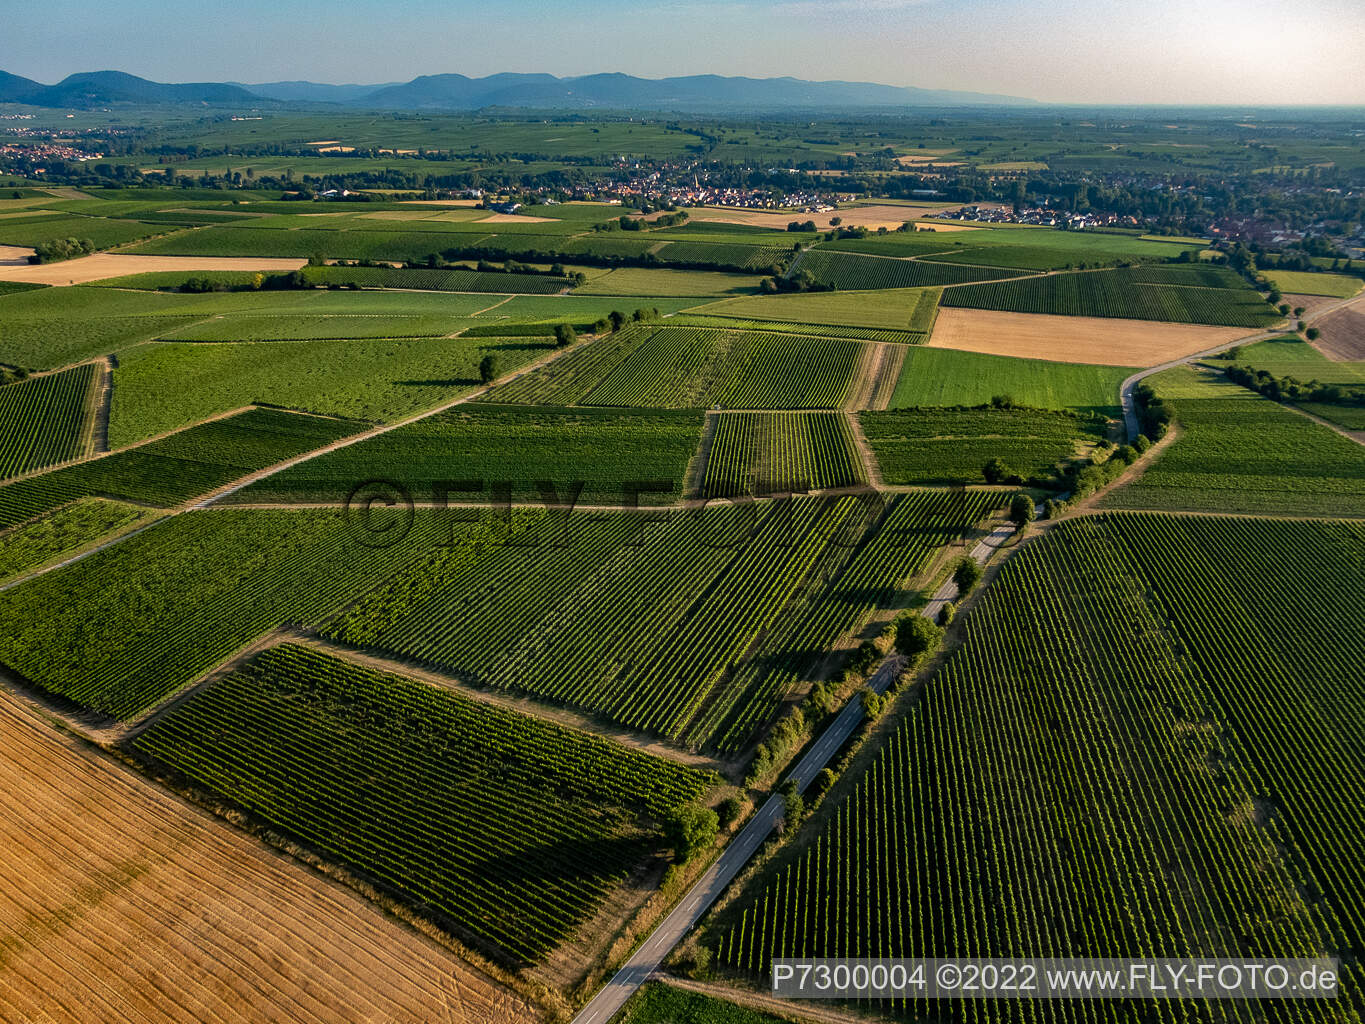 Aerial view of Fields and vineyards around Billigheim in the district Ingenheim in Billigheim-Ingenheim in the state Rhineland-Palatinate, Germany